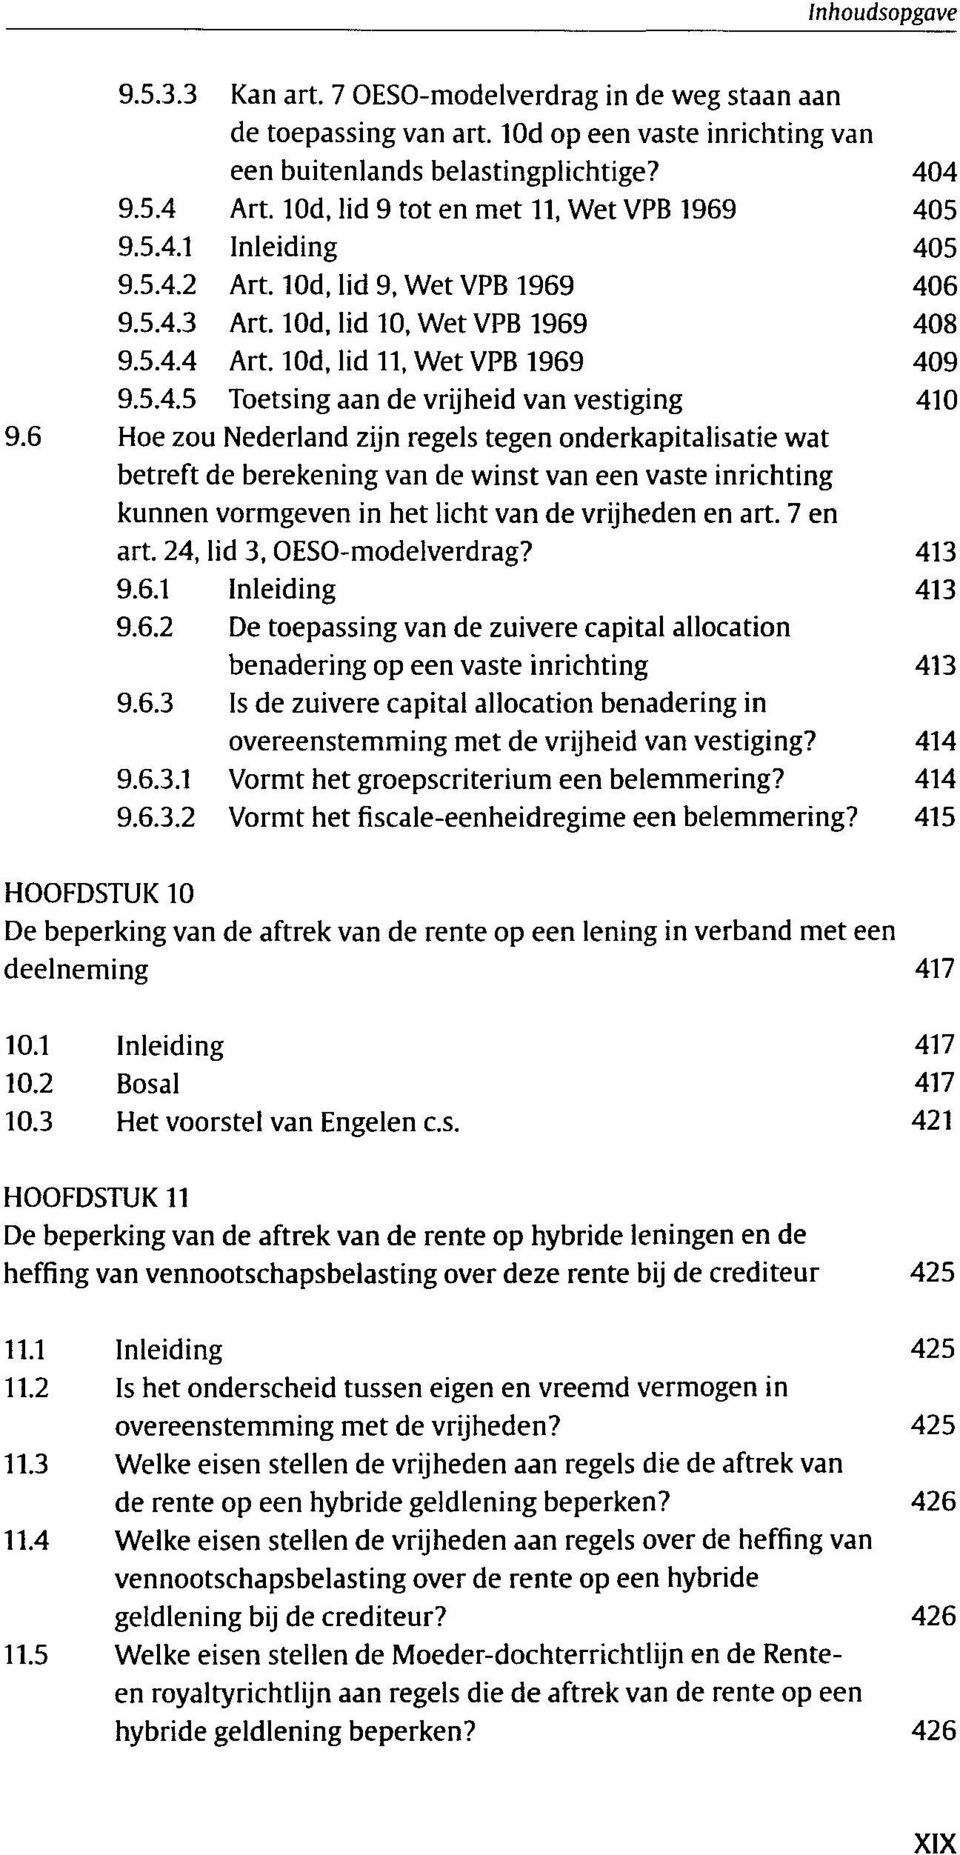 6 Hoe zou Nederland zijn regels tegen onderkapitalisatie wat betreft de berekening van de winst van een vaste inrichting kunnen vormgeven in het licht van de vrijheden en art. 7 en art.